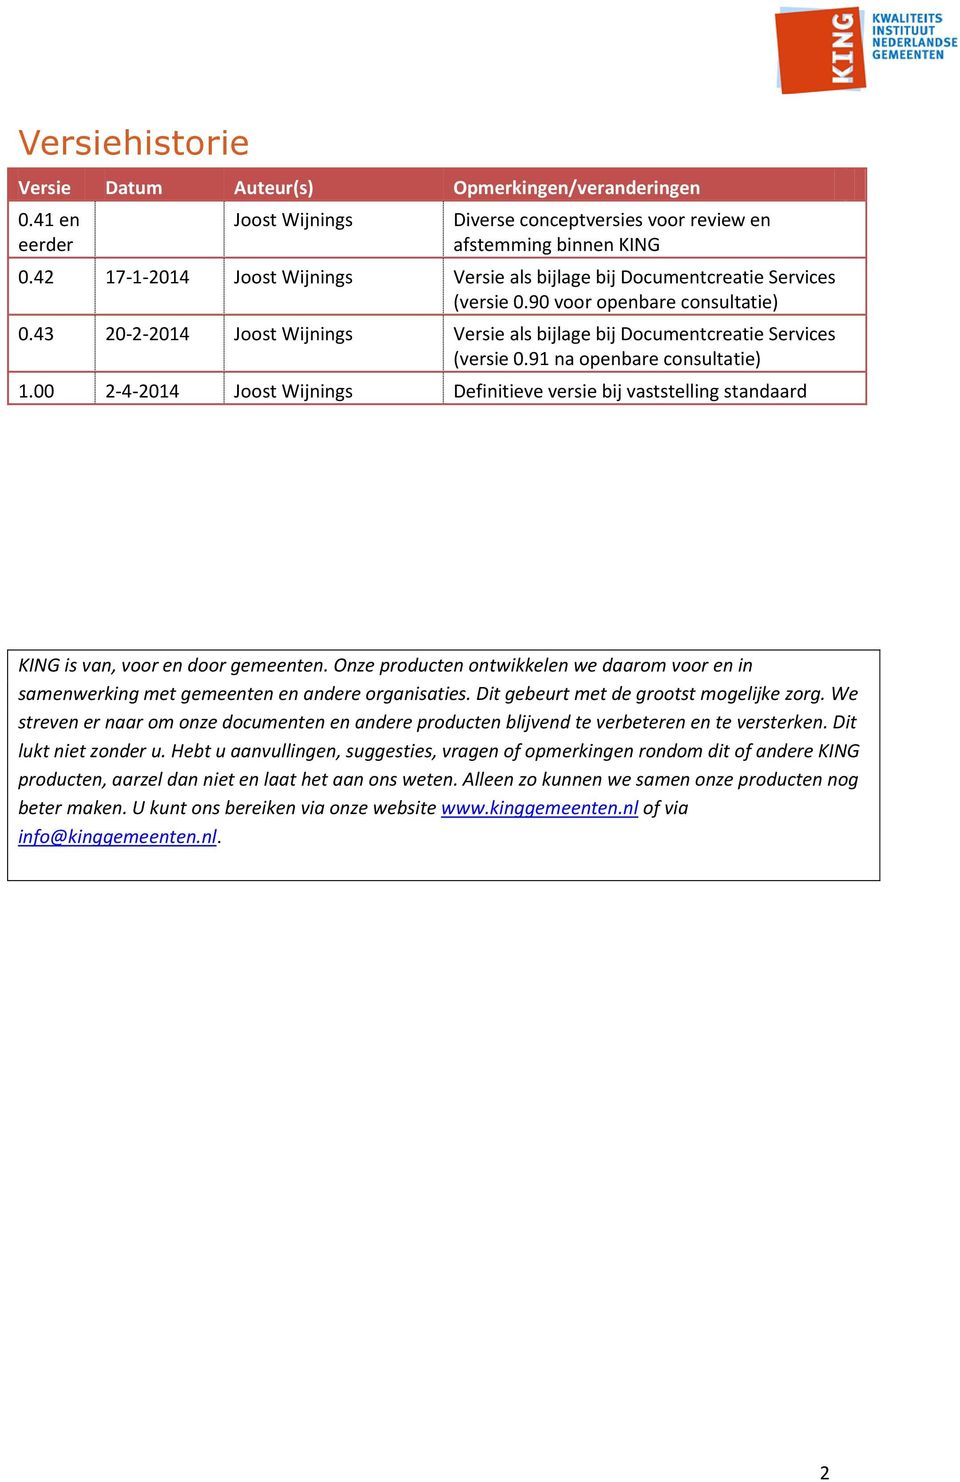 43 20-2-2014 Joost Wijnings Versie als bijlage bij Documentcreatie Services (versie 0.91 na openbare consultatie) 1.